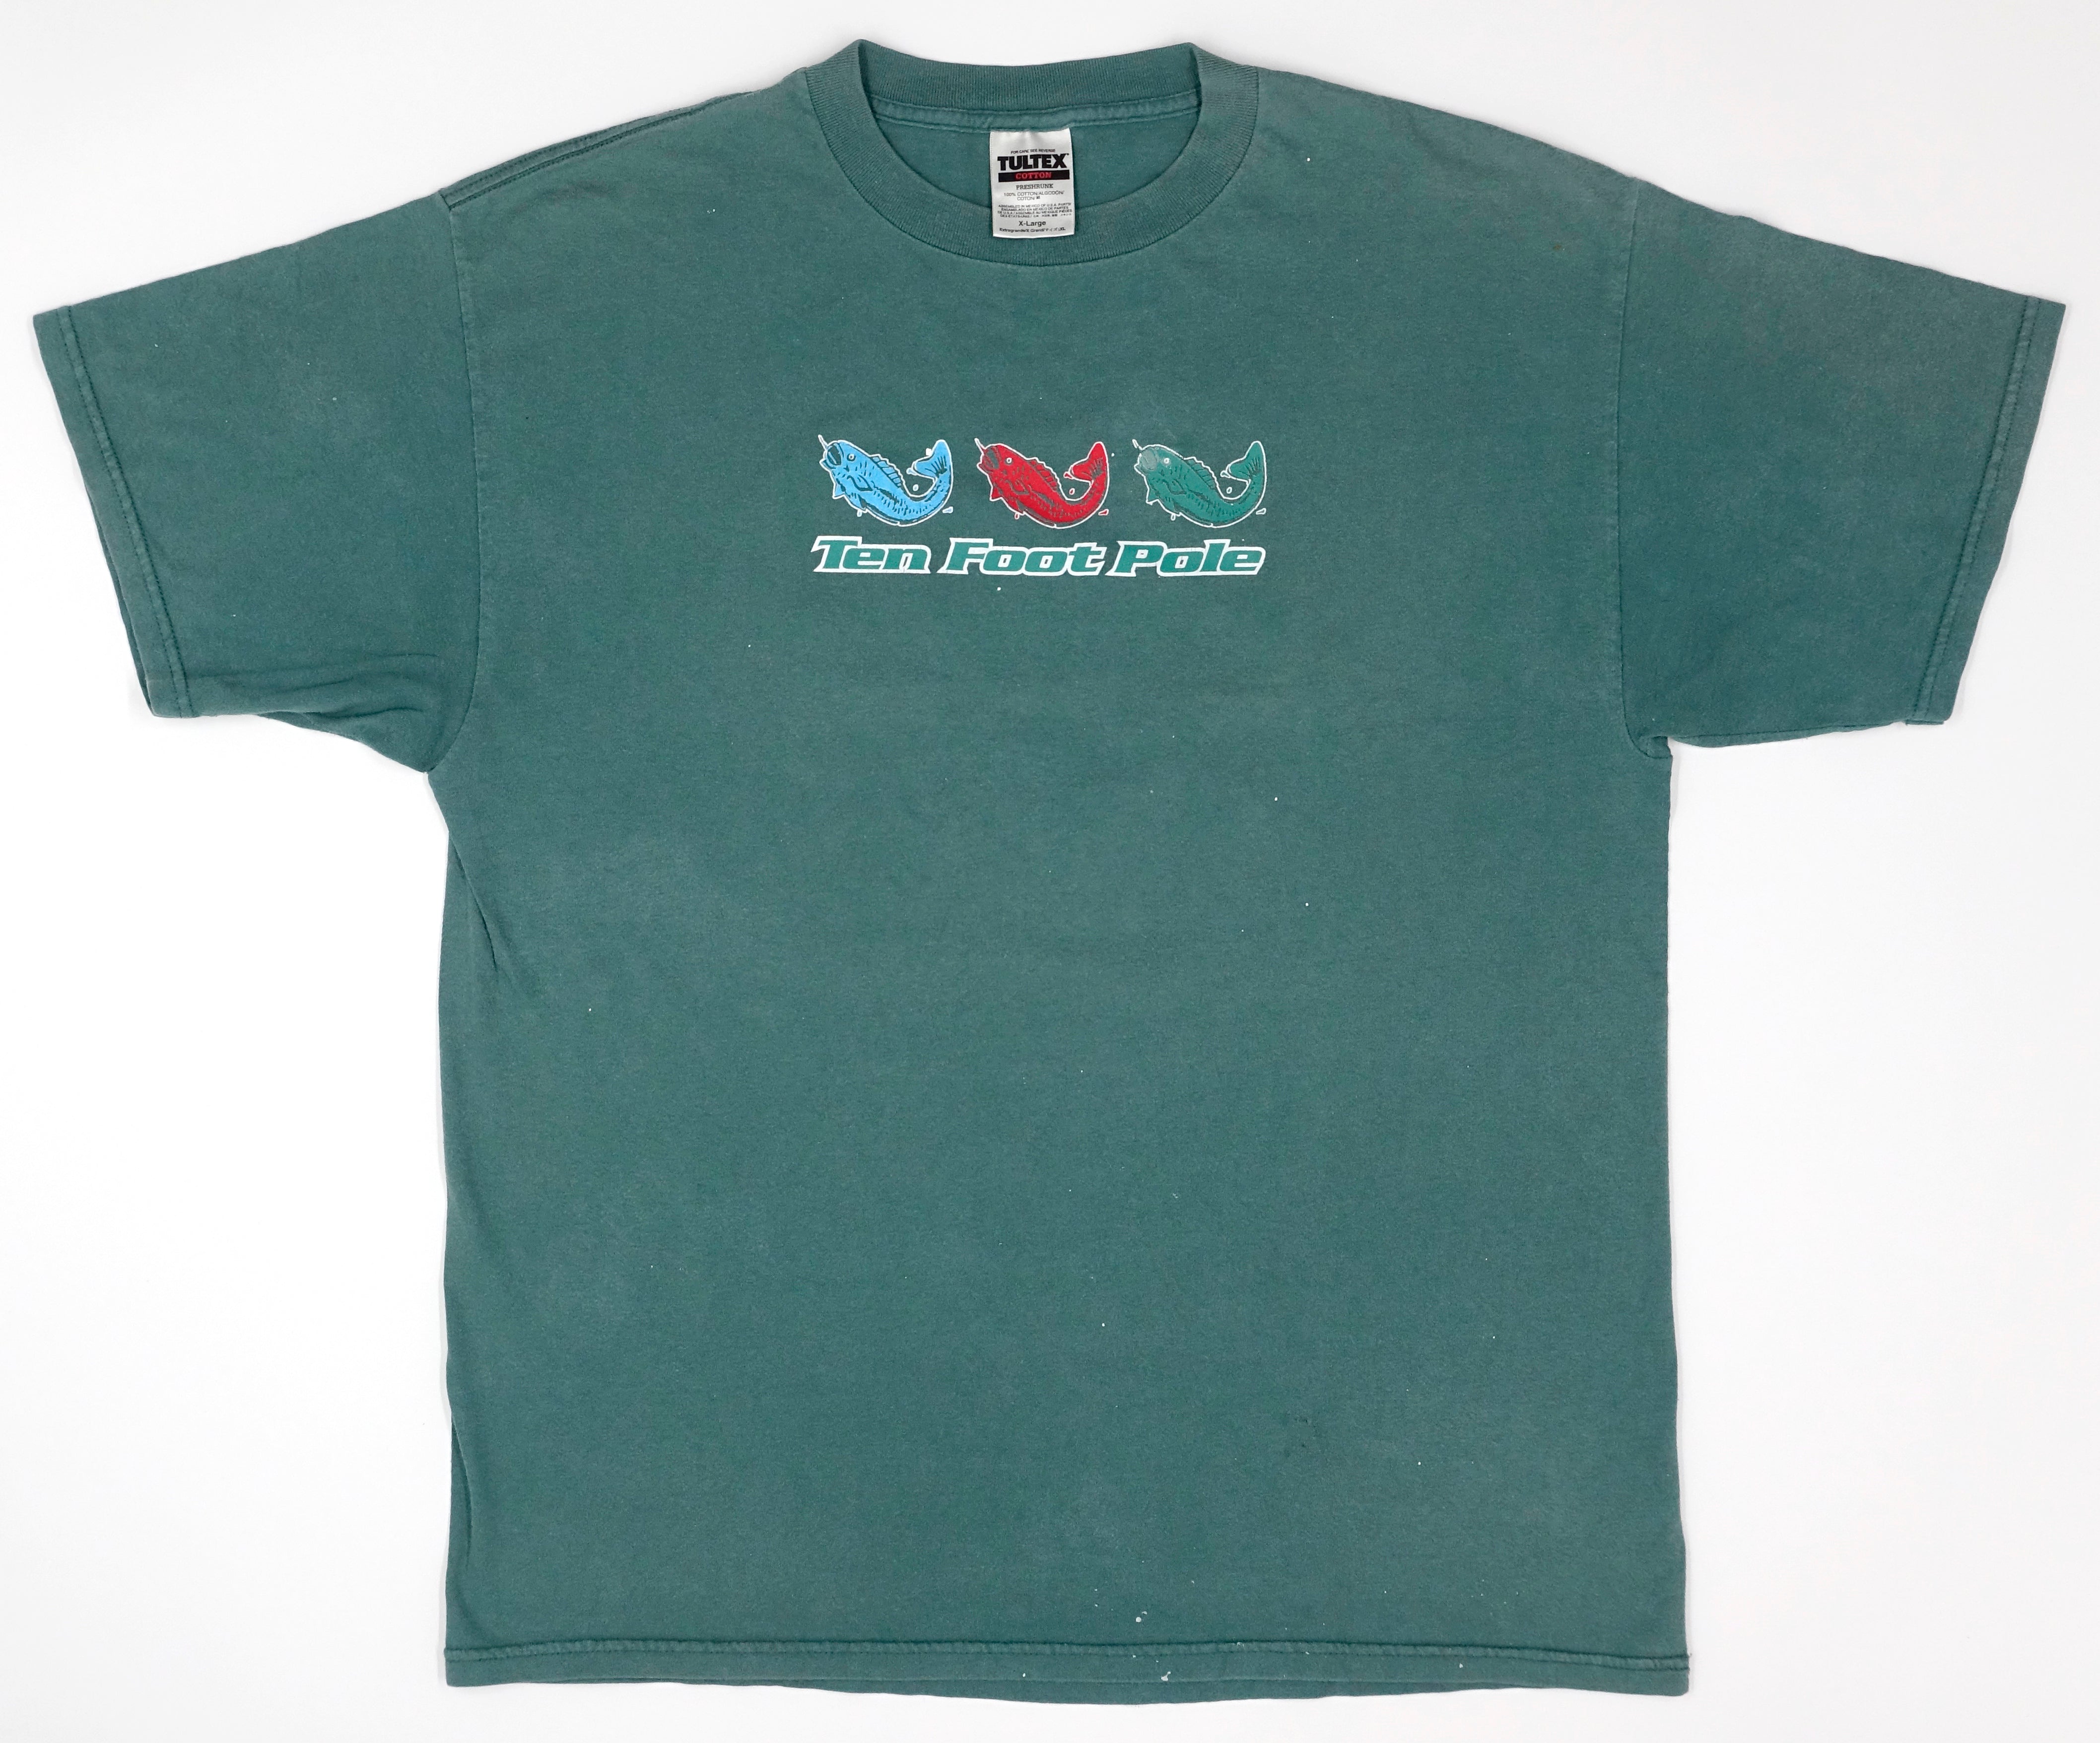 Ten Foot Pole ‎– Triple Fish 90's Tour Shirt Size XL